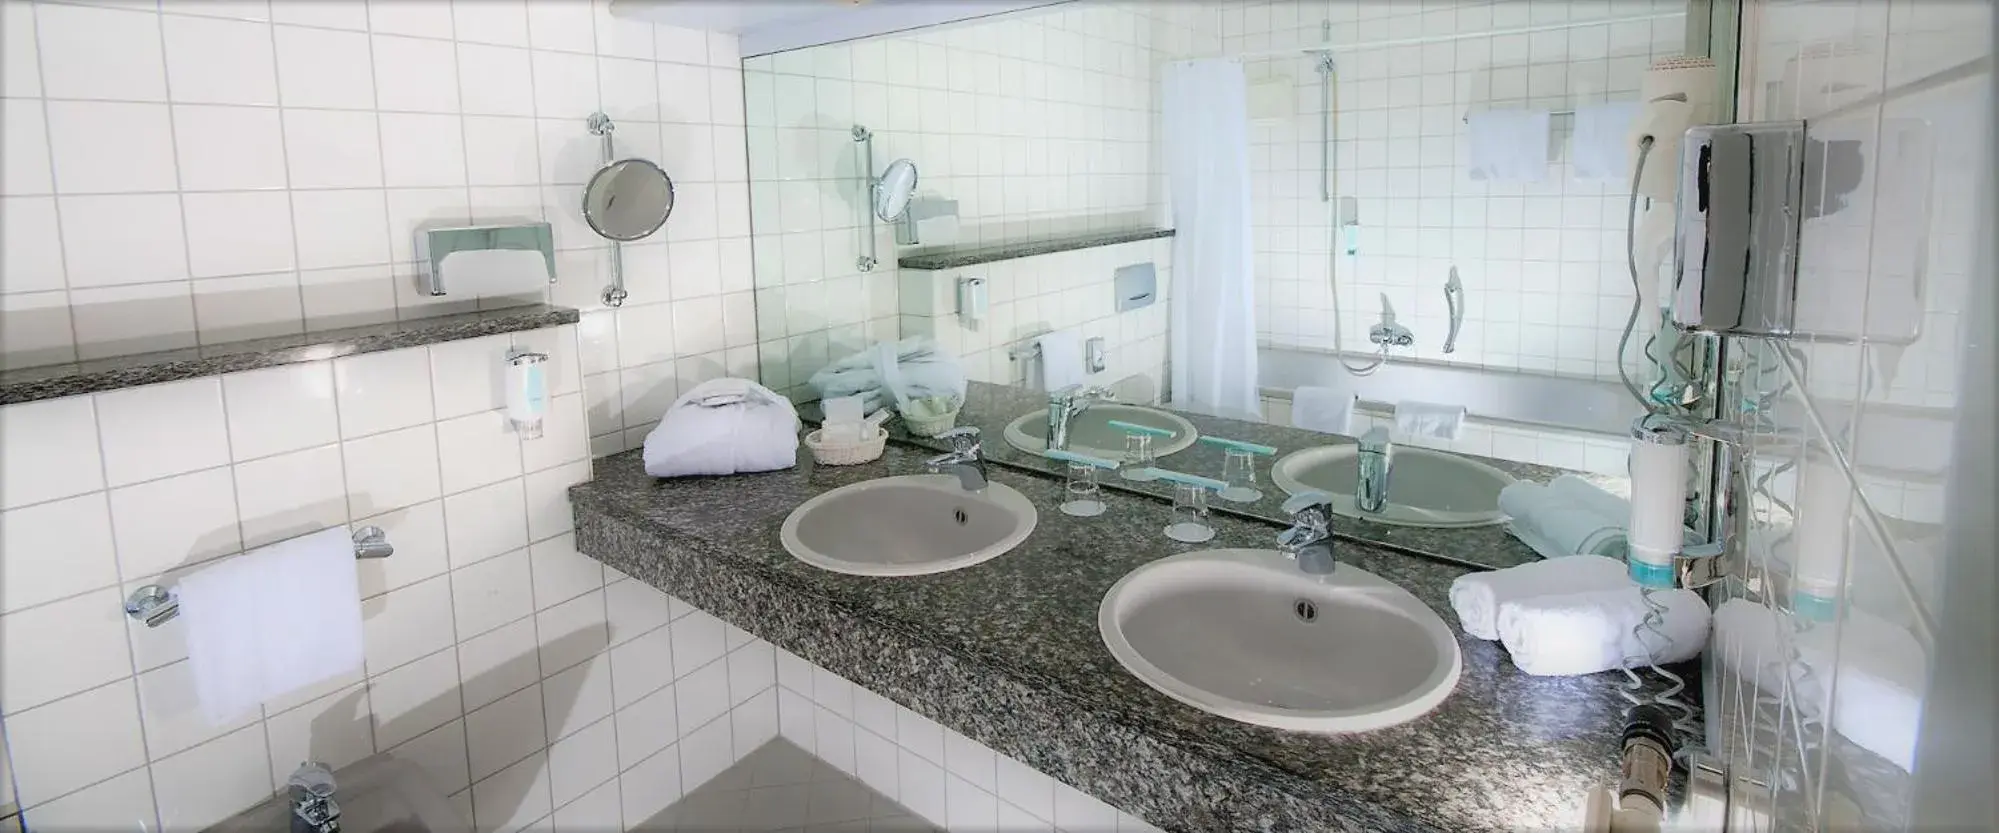 Bathroom in Hotel Ambiente Walldorf